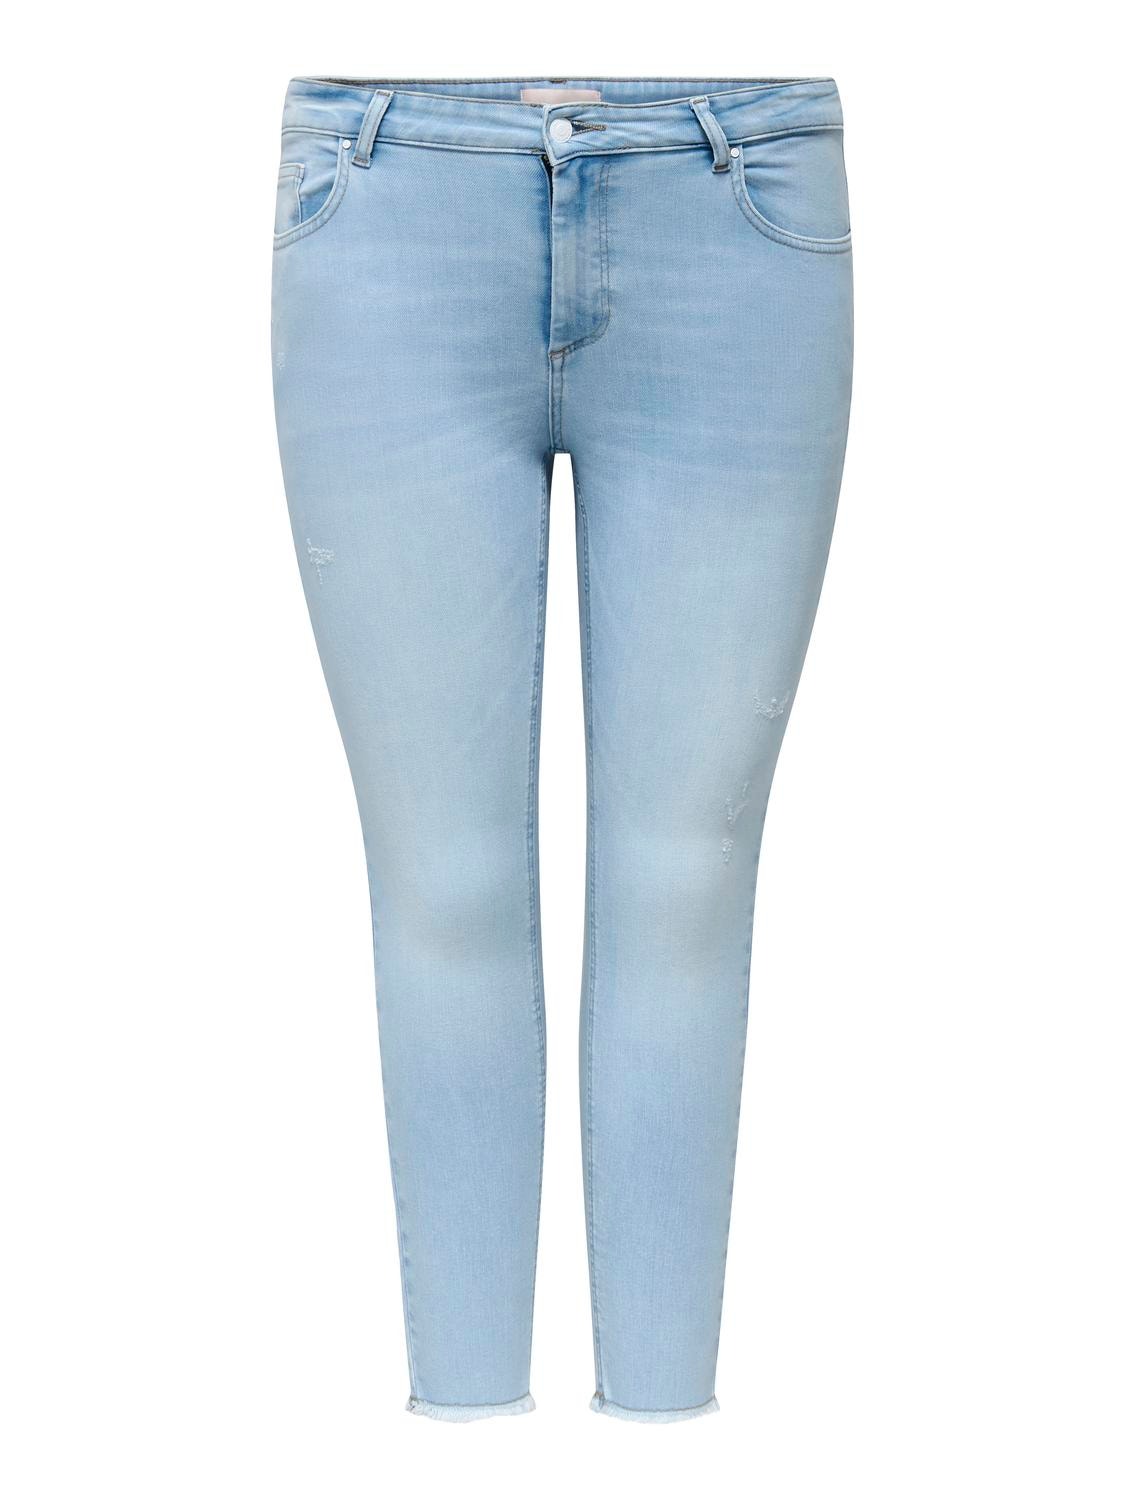 ONLY Skinny Fit Røff kantskjæring Jeans -Light Blue Bleached Denim - 15318334